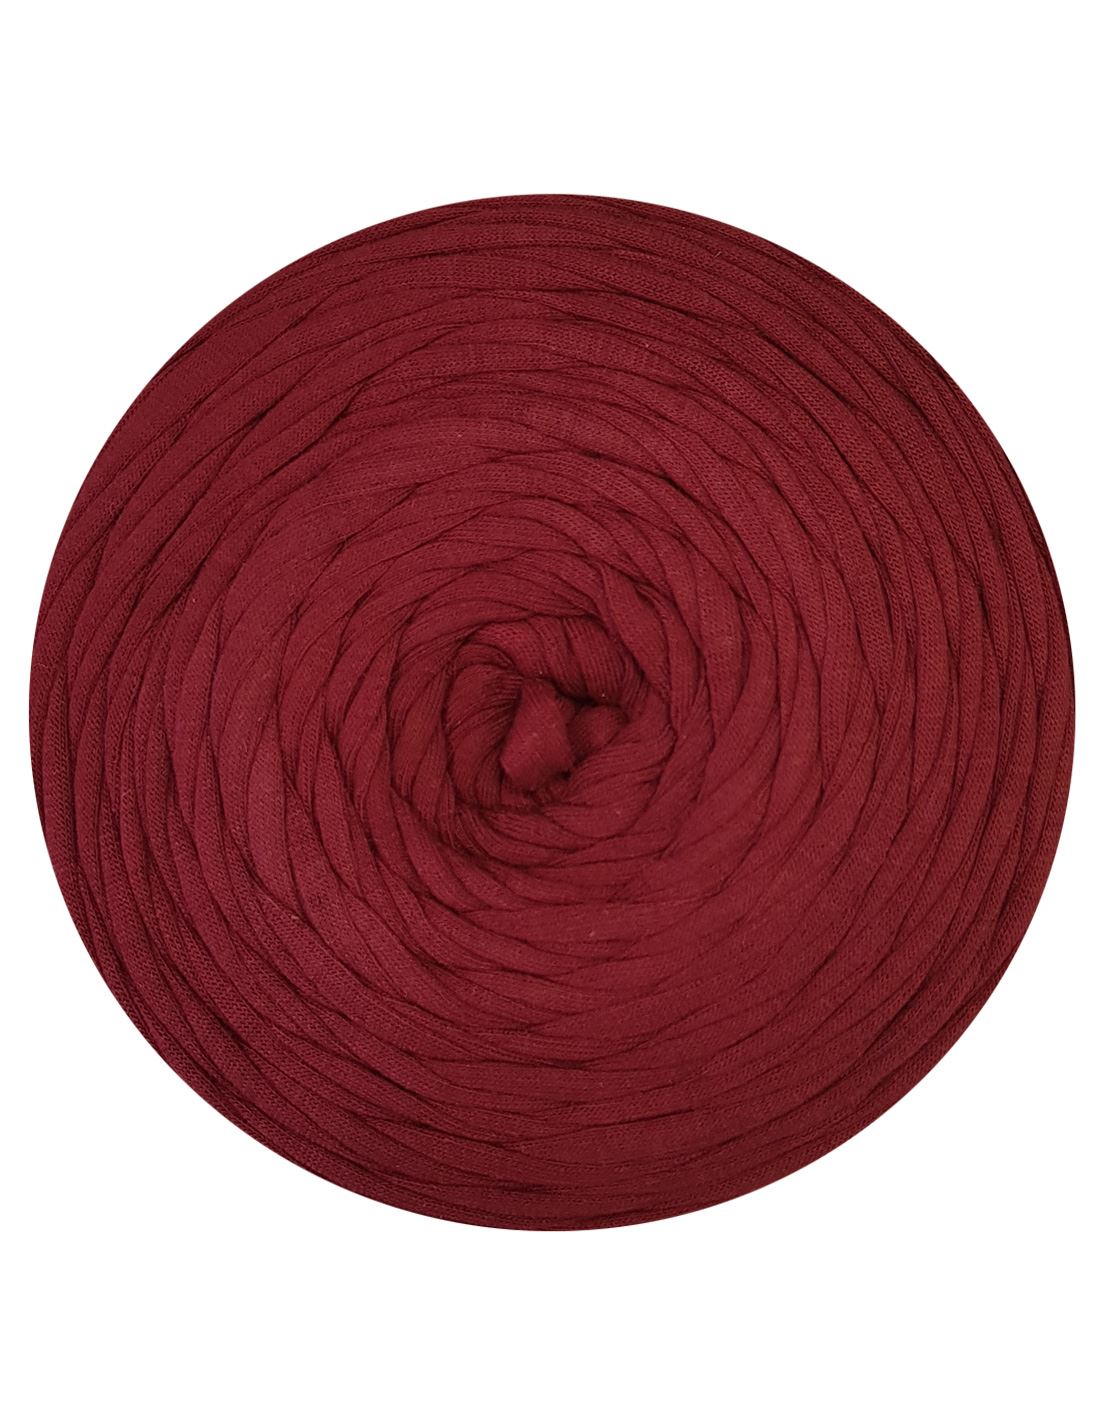 Rich maroon t-shirt yarn by Hoooked Zpagetti (100-120m)